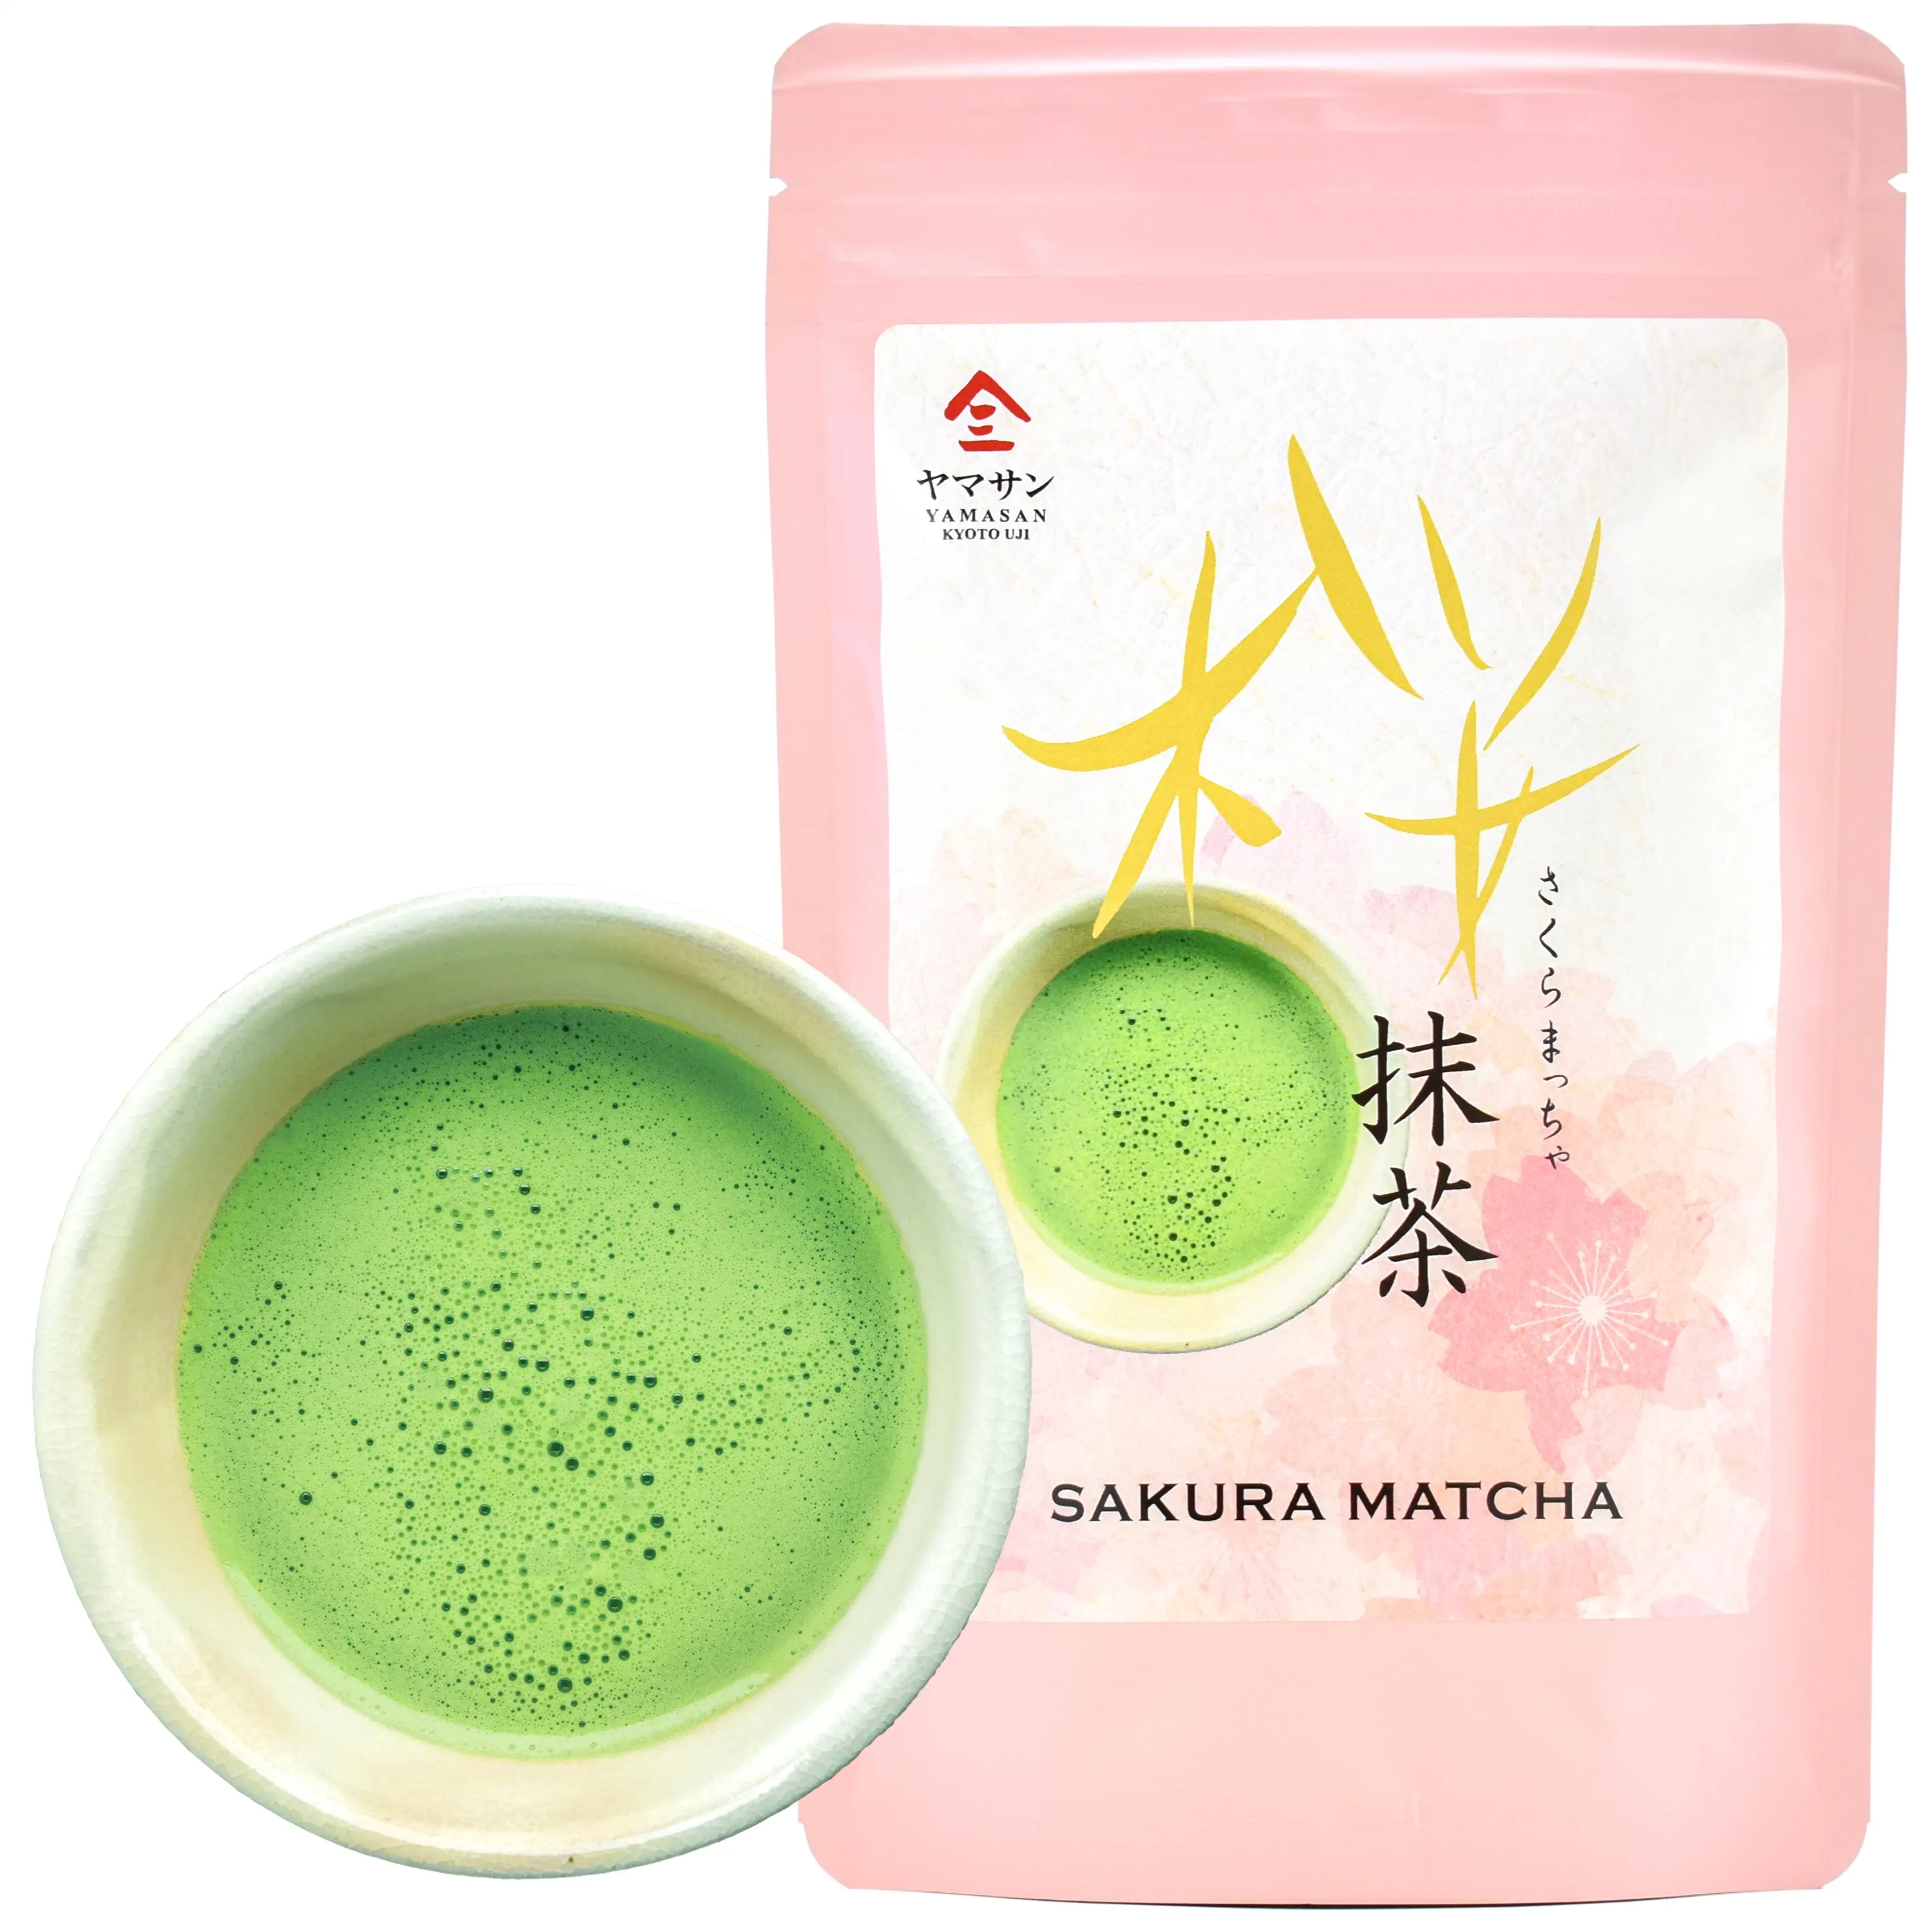 ساكورا شاي ماتشا أخضر الشاي اليابانية الكرز زهر مسحوق شاي للمقهى حلويات المشروبات بالجملة السائبة OEM